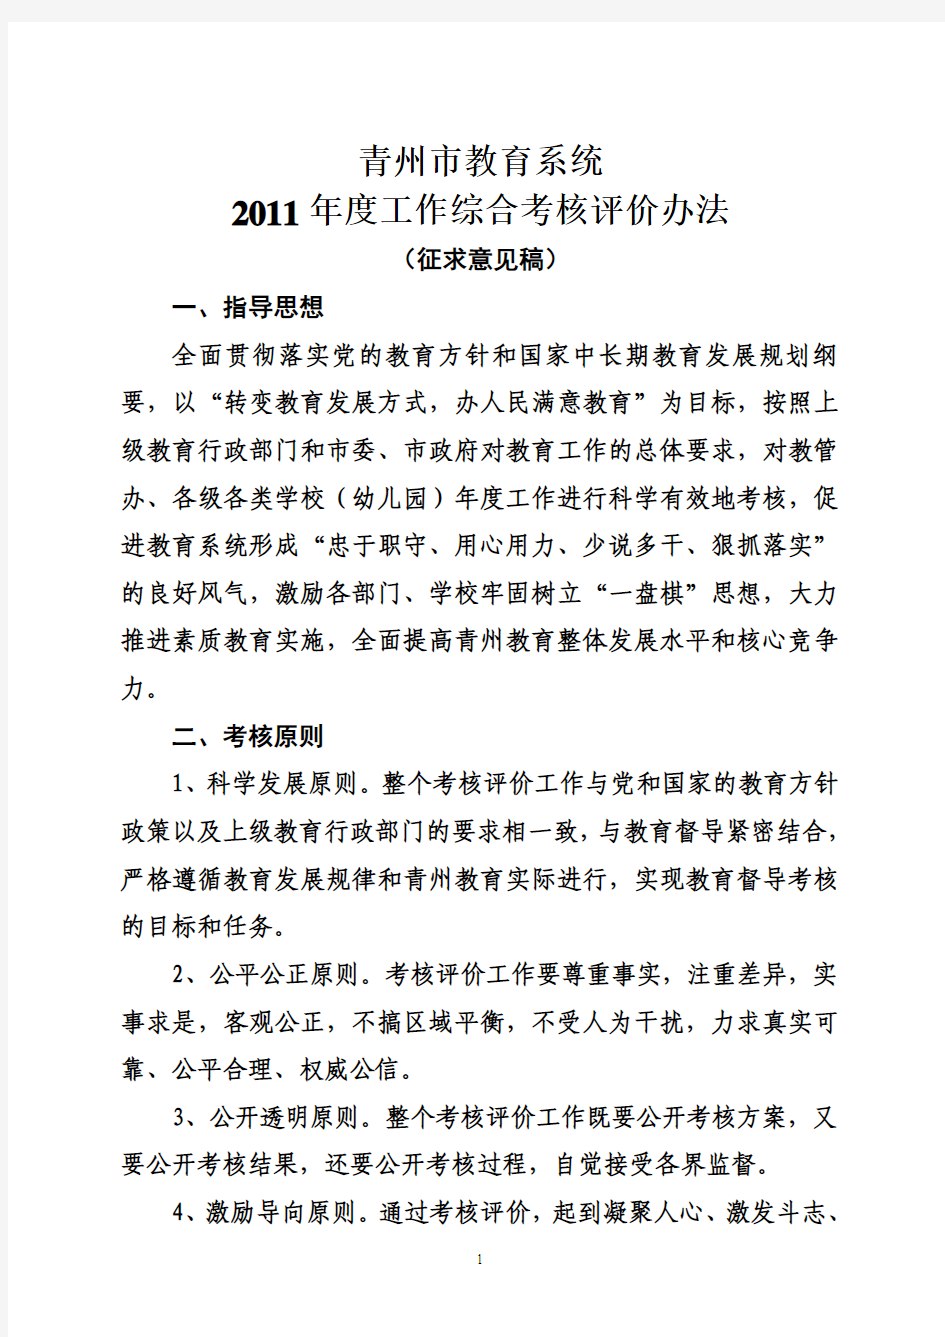 青州市教育系统2011年度综合考核评价办法(征求意见稿)